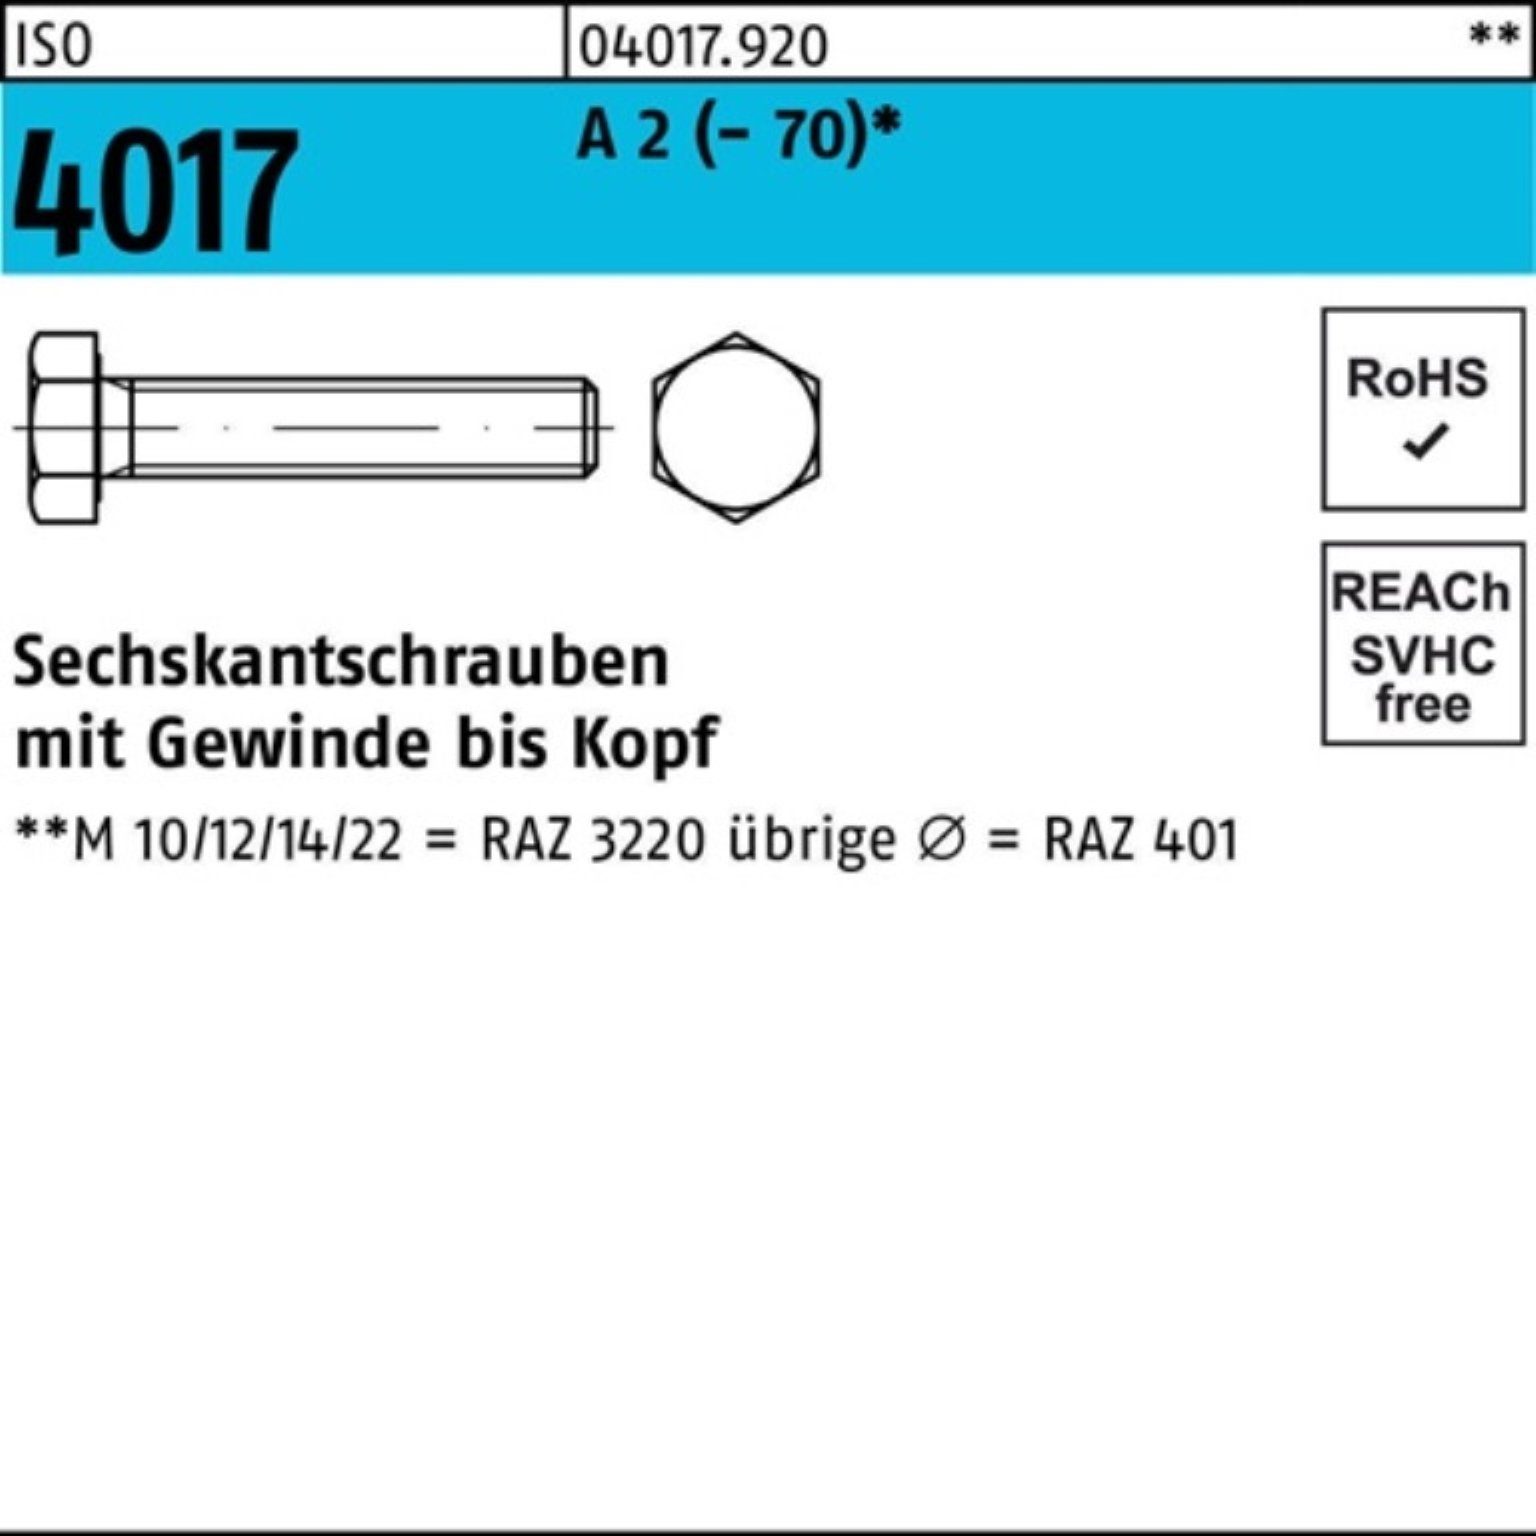 Bufab Sechskantschraube 100er Pack Sechskantschraube ISO 4017 VG M10x 180 A 2 (70) 1 Stück